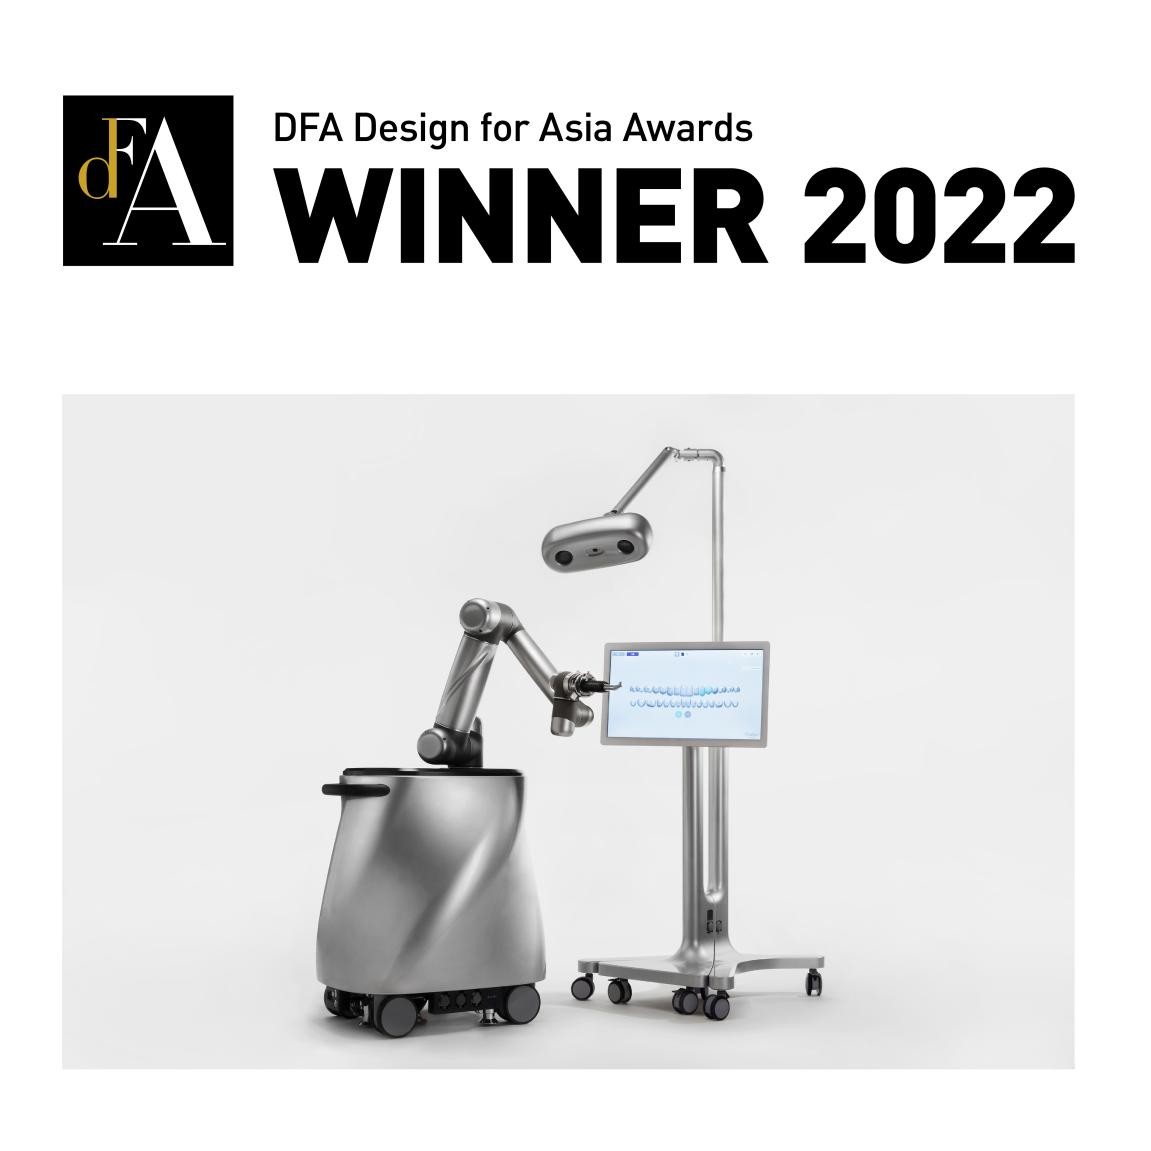 雅客智慧在DFA亚洲最具影响力设计奖2022中荣获 铜奖